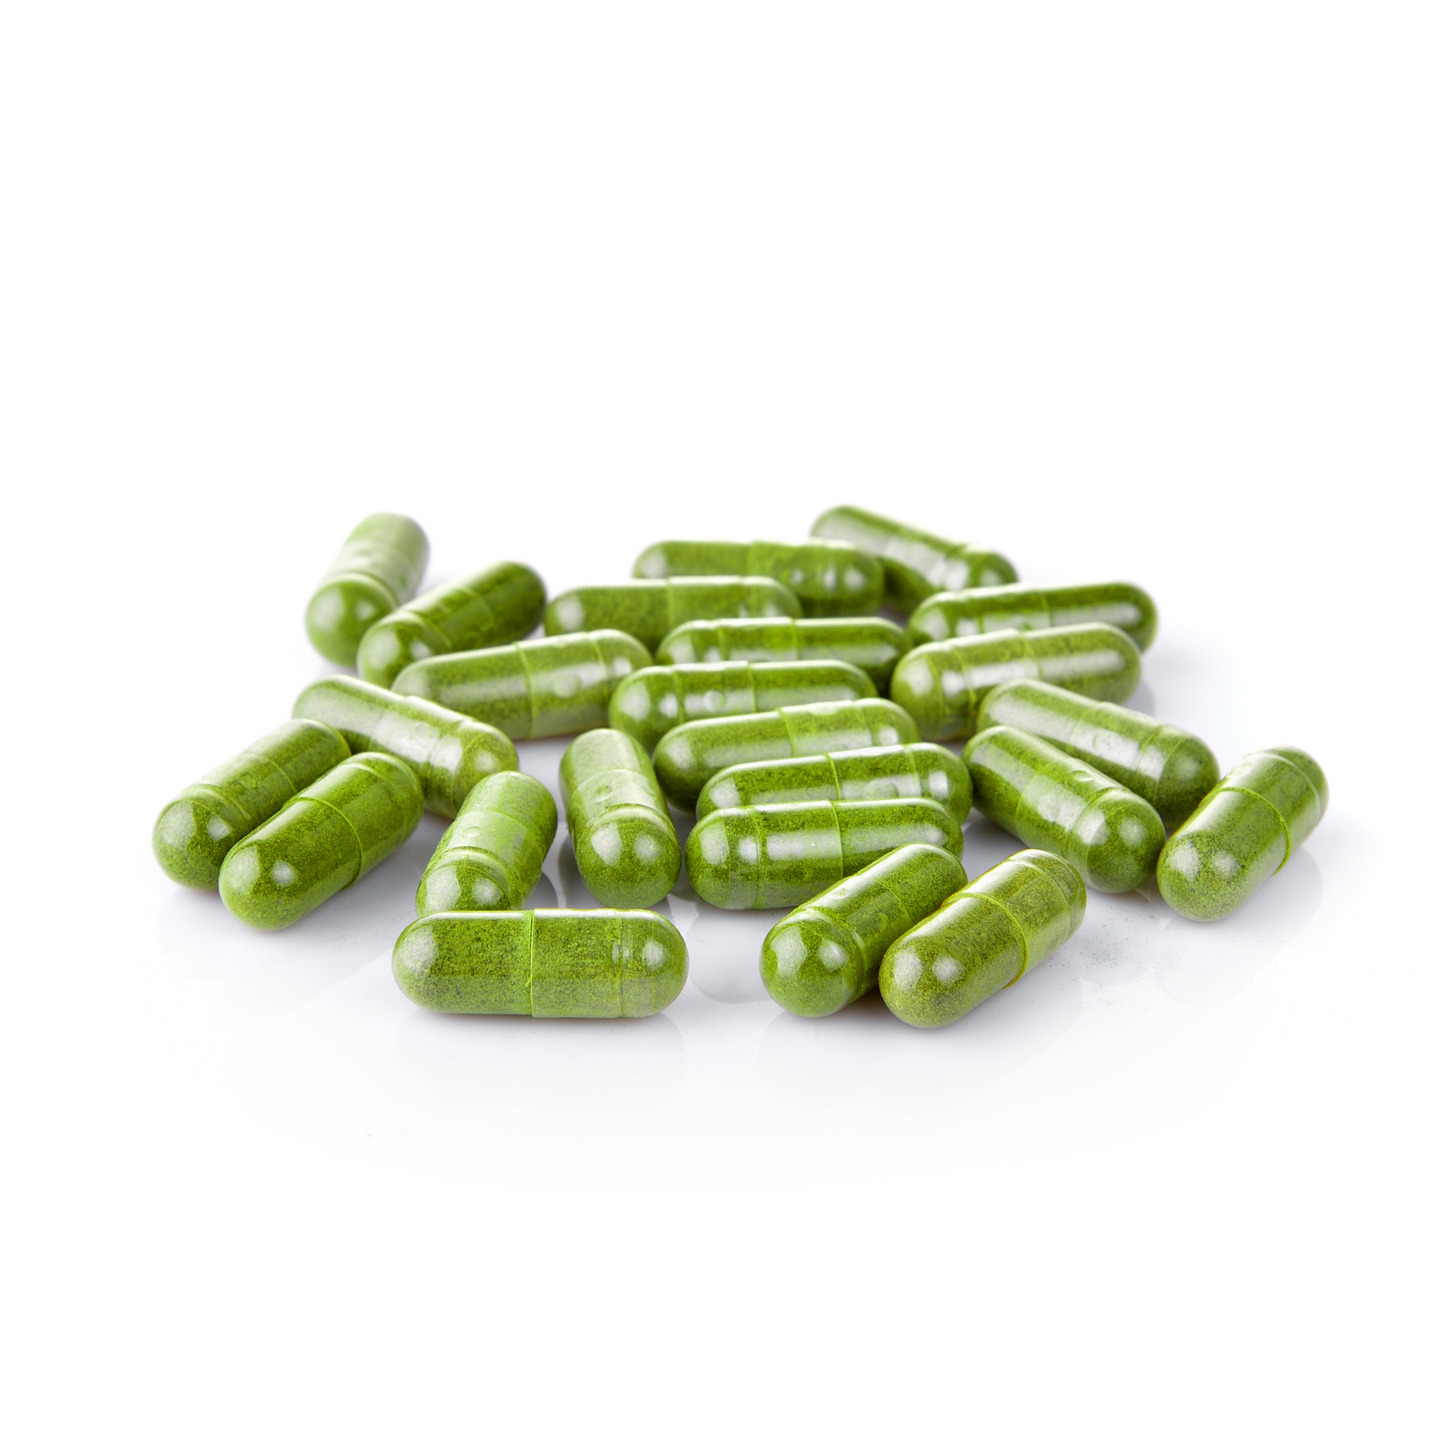 Moringa Capsules - Premium Quality - Moringa Leaf, Immune Support